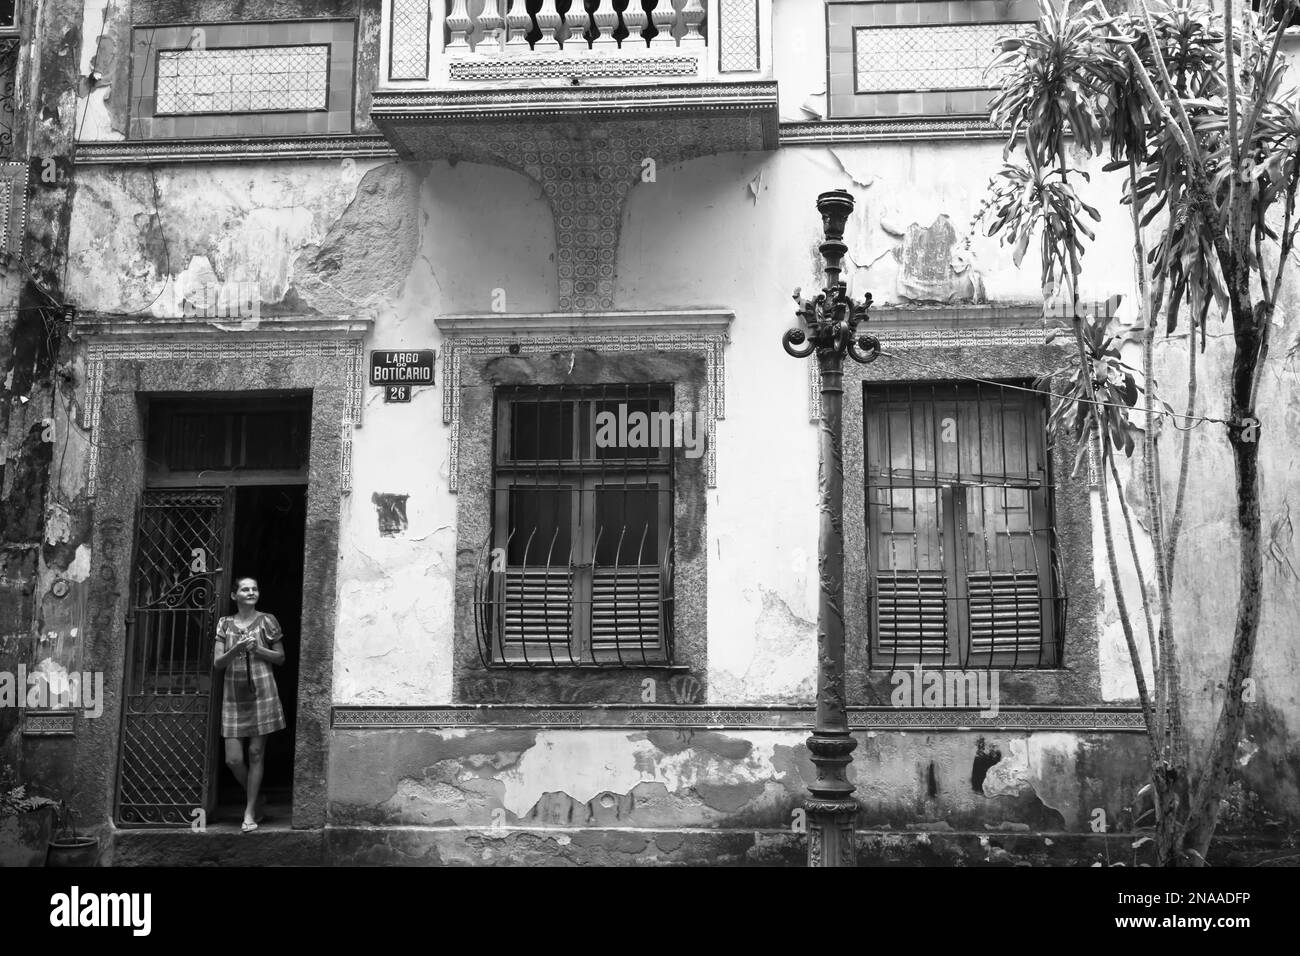 Largo do Boticário (place de l'apothicaire) à Cosme Velho avec une maison coloniale néo-classique portugaise en ruine ; Rio de Janeiro, Brésil Banque D'Images